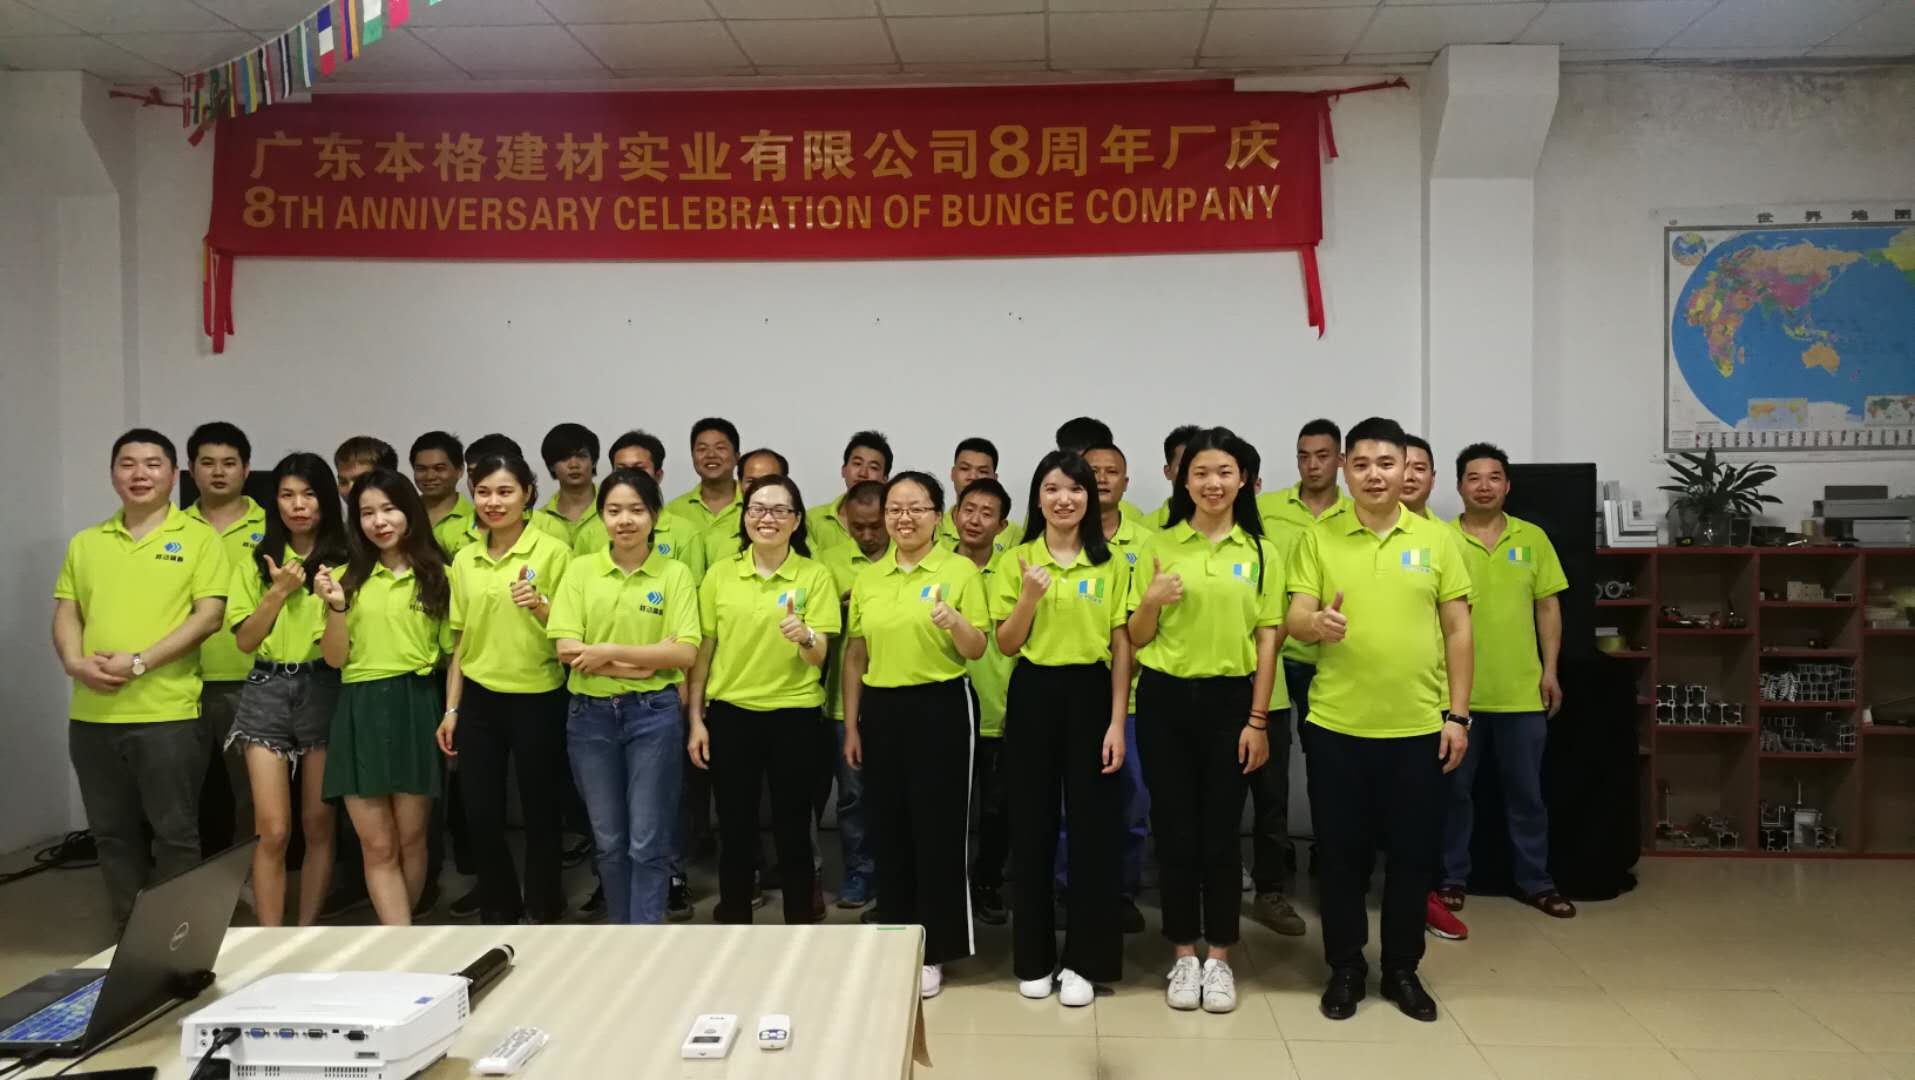 الصين Guangdong Bunge Building Material Industrial Co., Ltd ملف الشركة